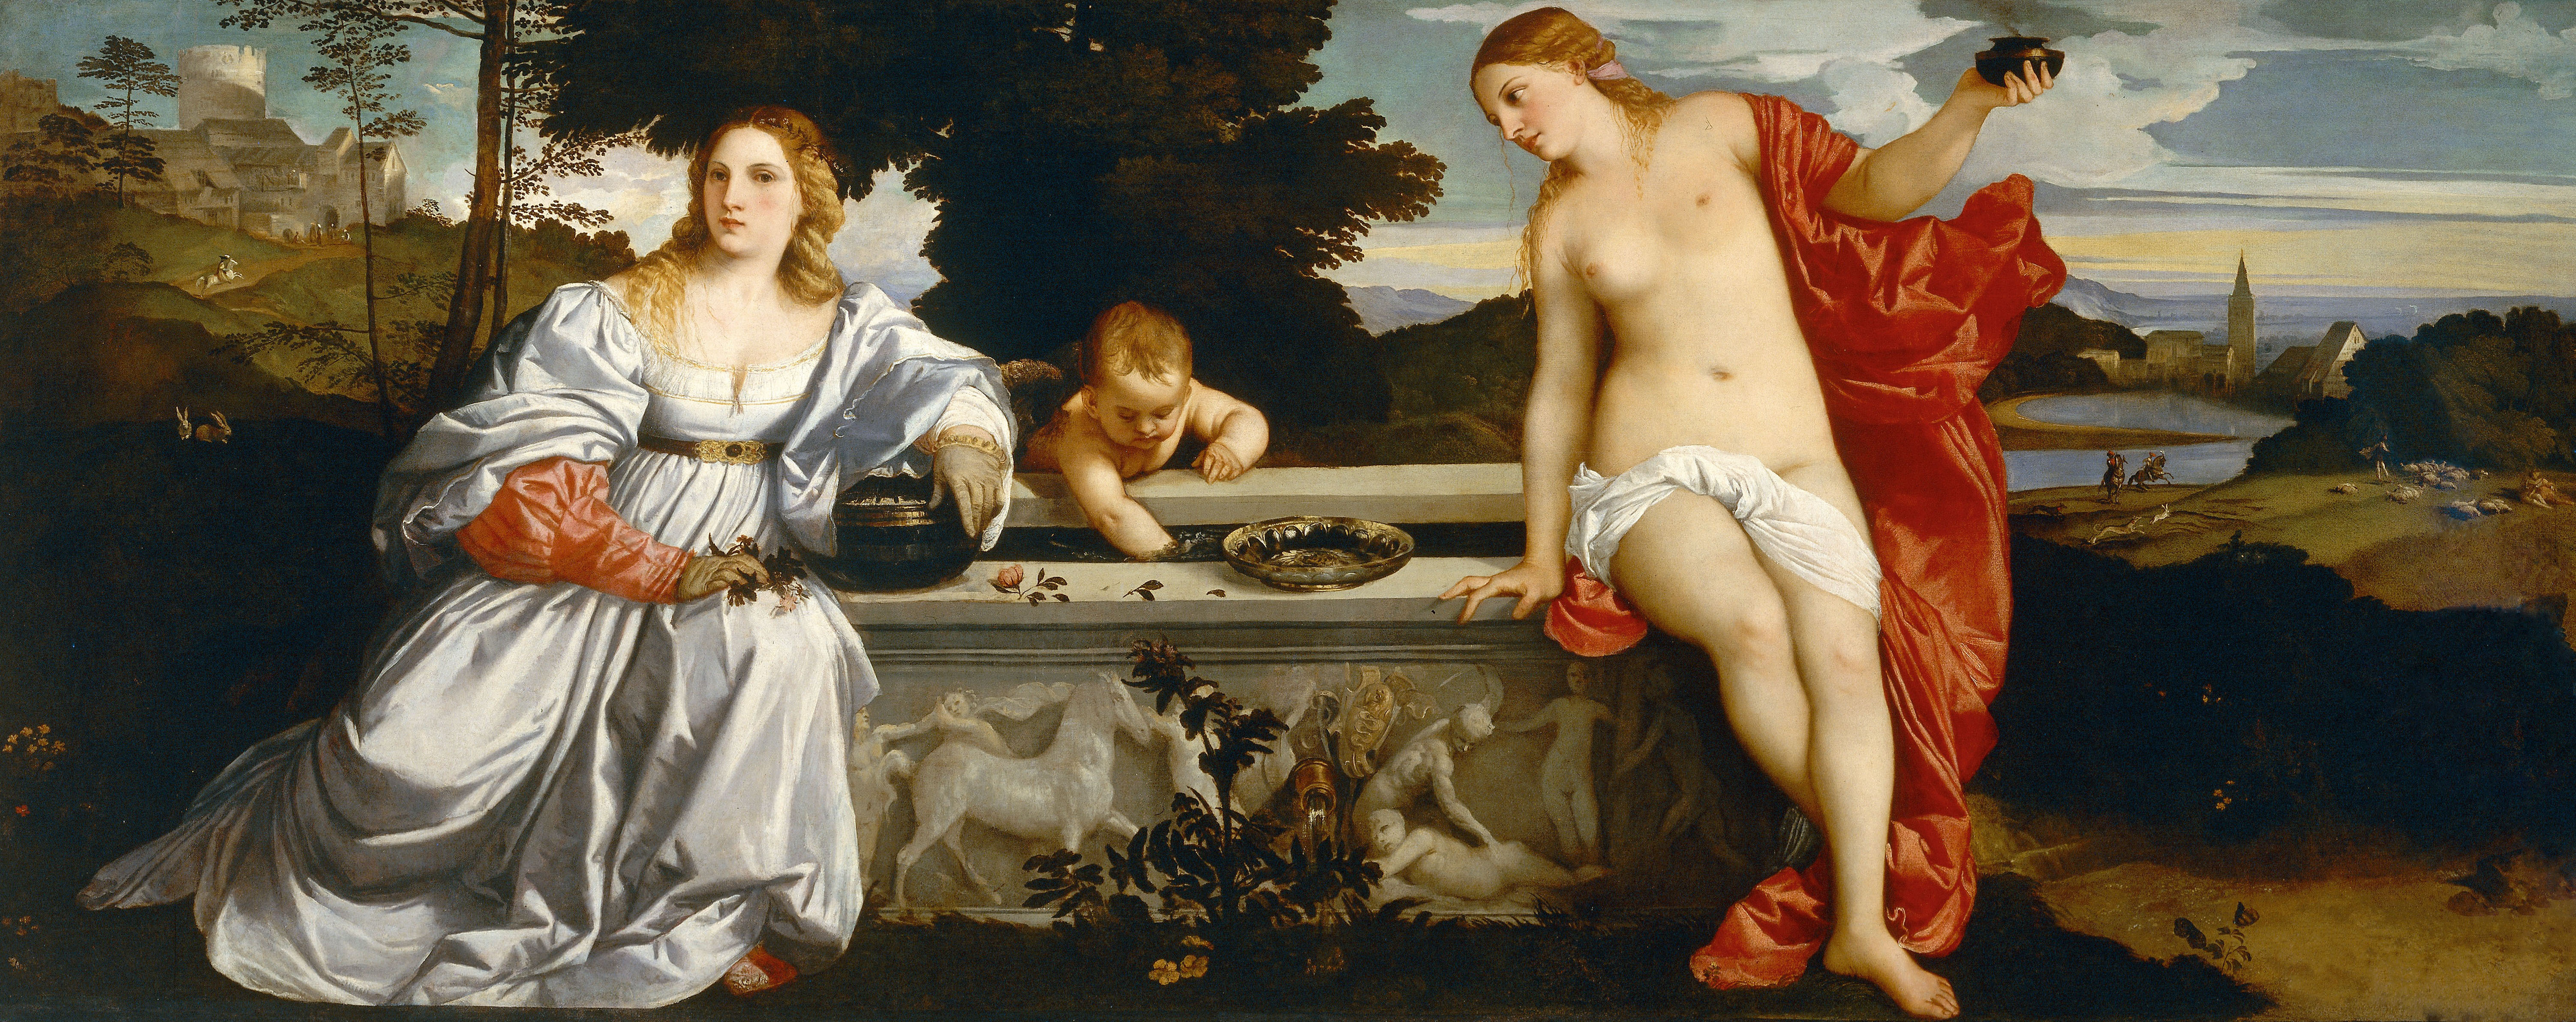 L'immagine raffigura il dipinto Amor Sacro e Amor Profano, Tiziano, Galleria Borghese, Roma